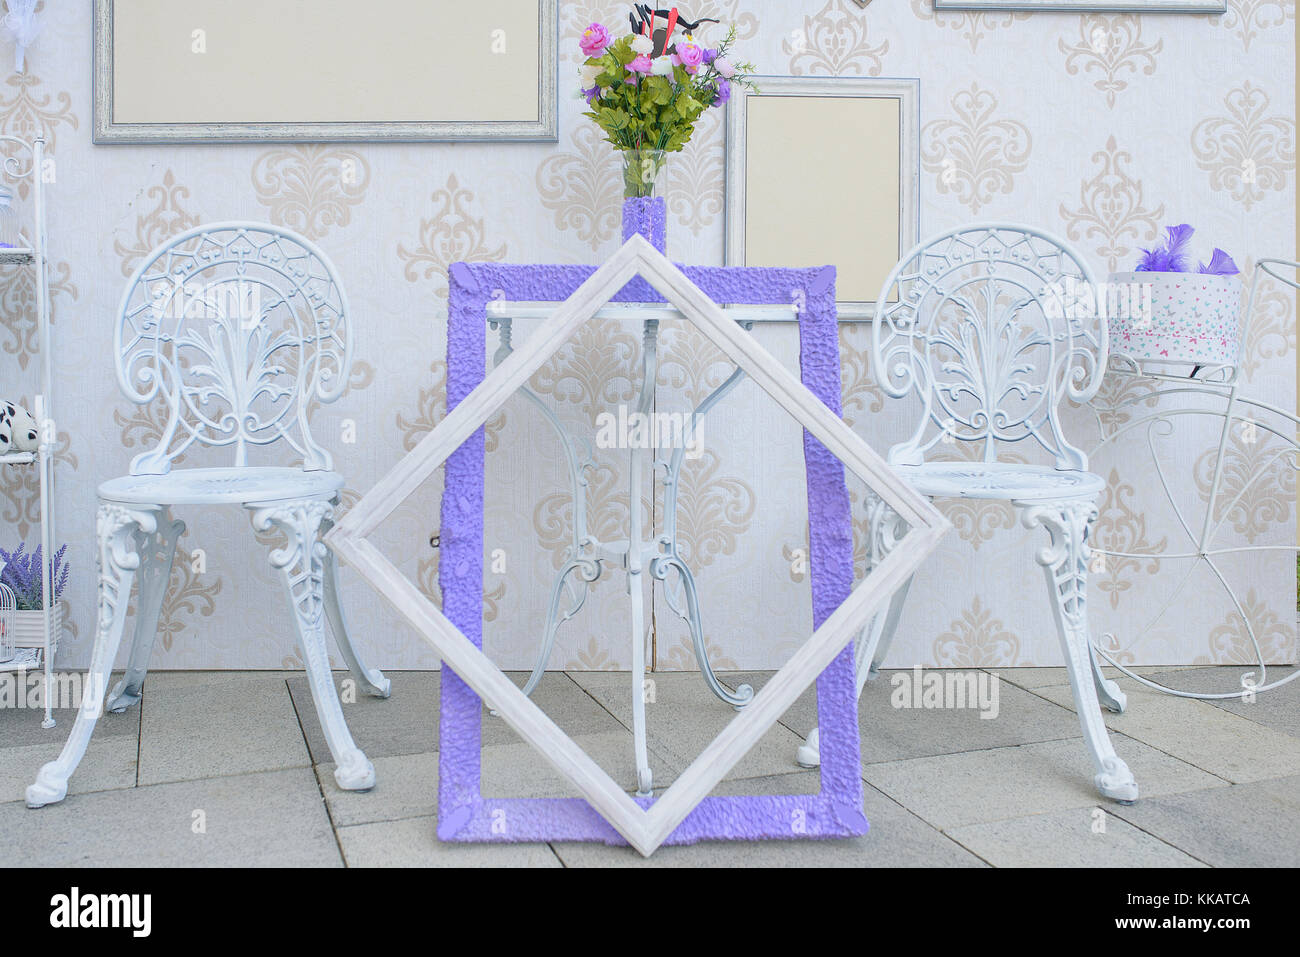 Bianco esterno mobili in ferro e vuoto cornici con accenti di colore viola, interessante display minimalista per ricevimenti per matrimoni o feste in giardino Foto Stock